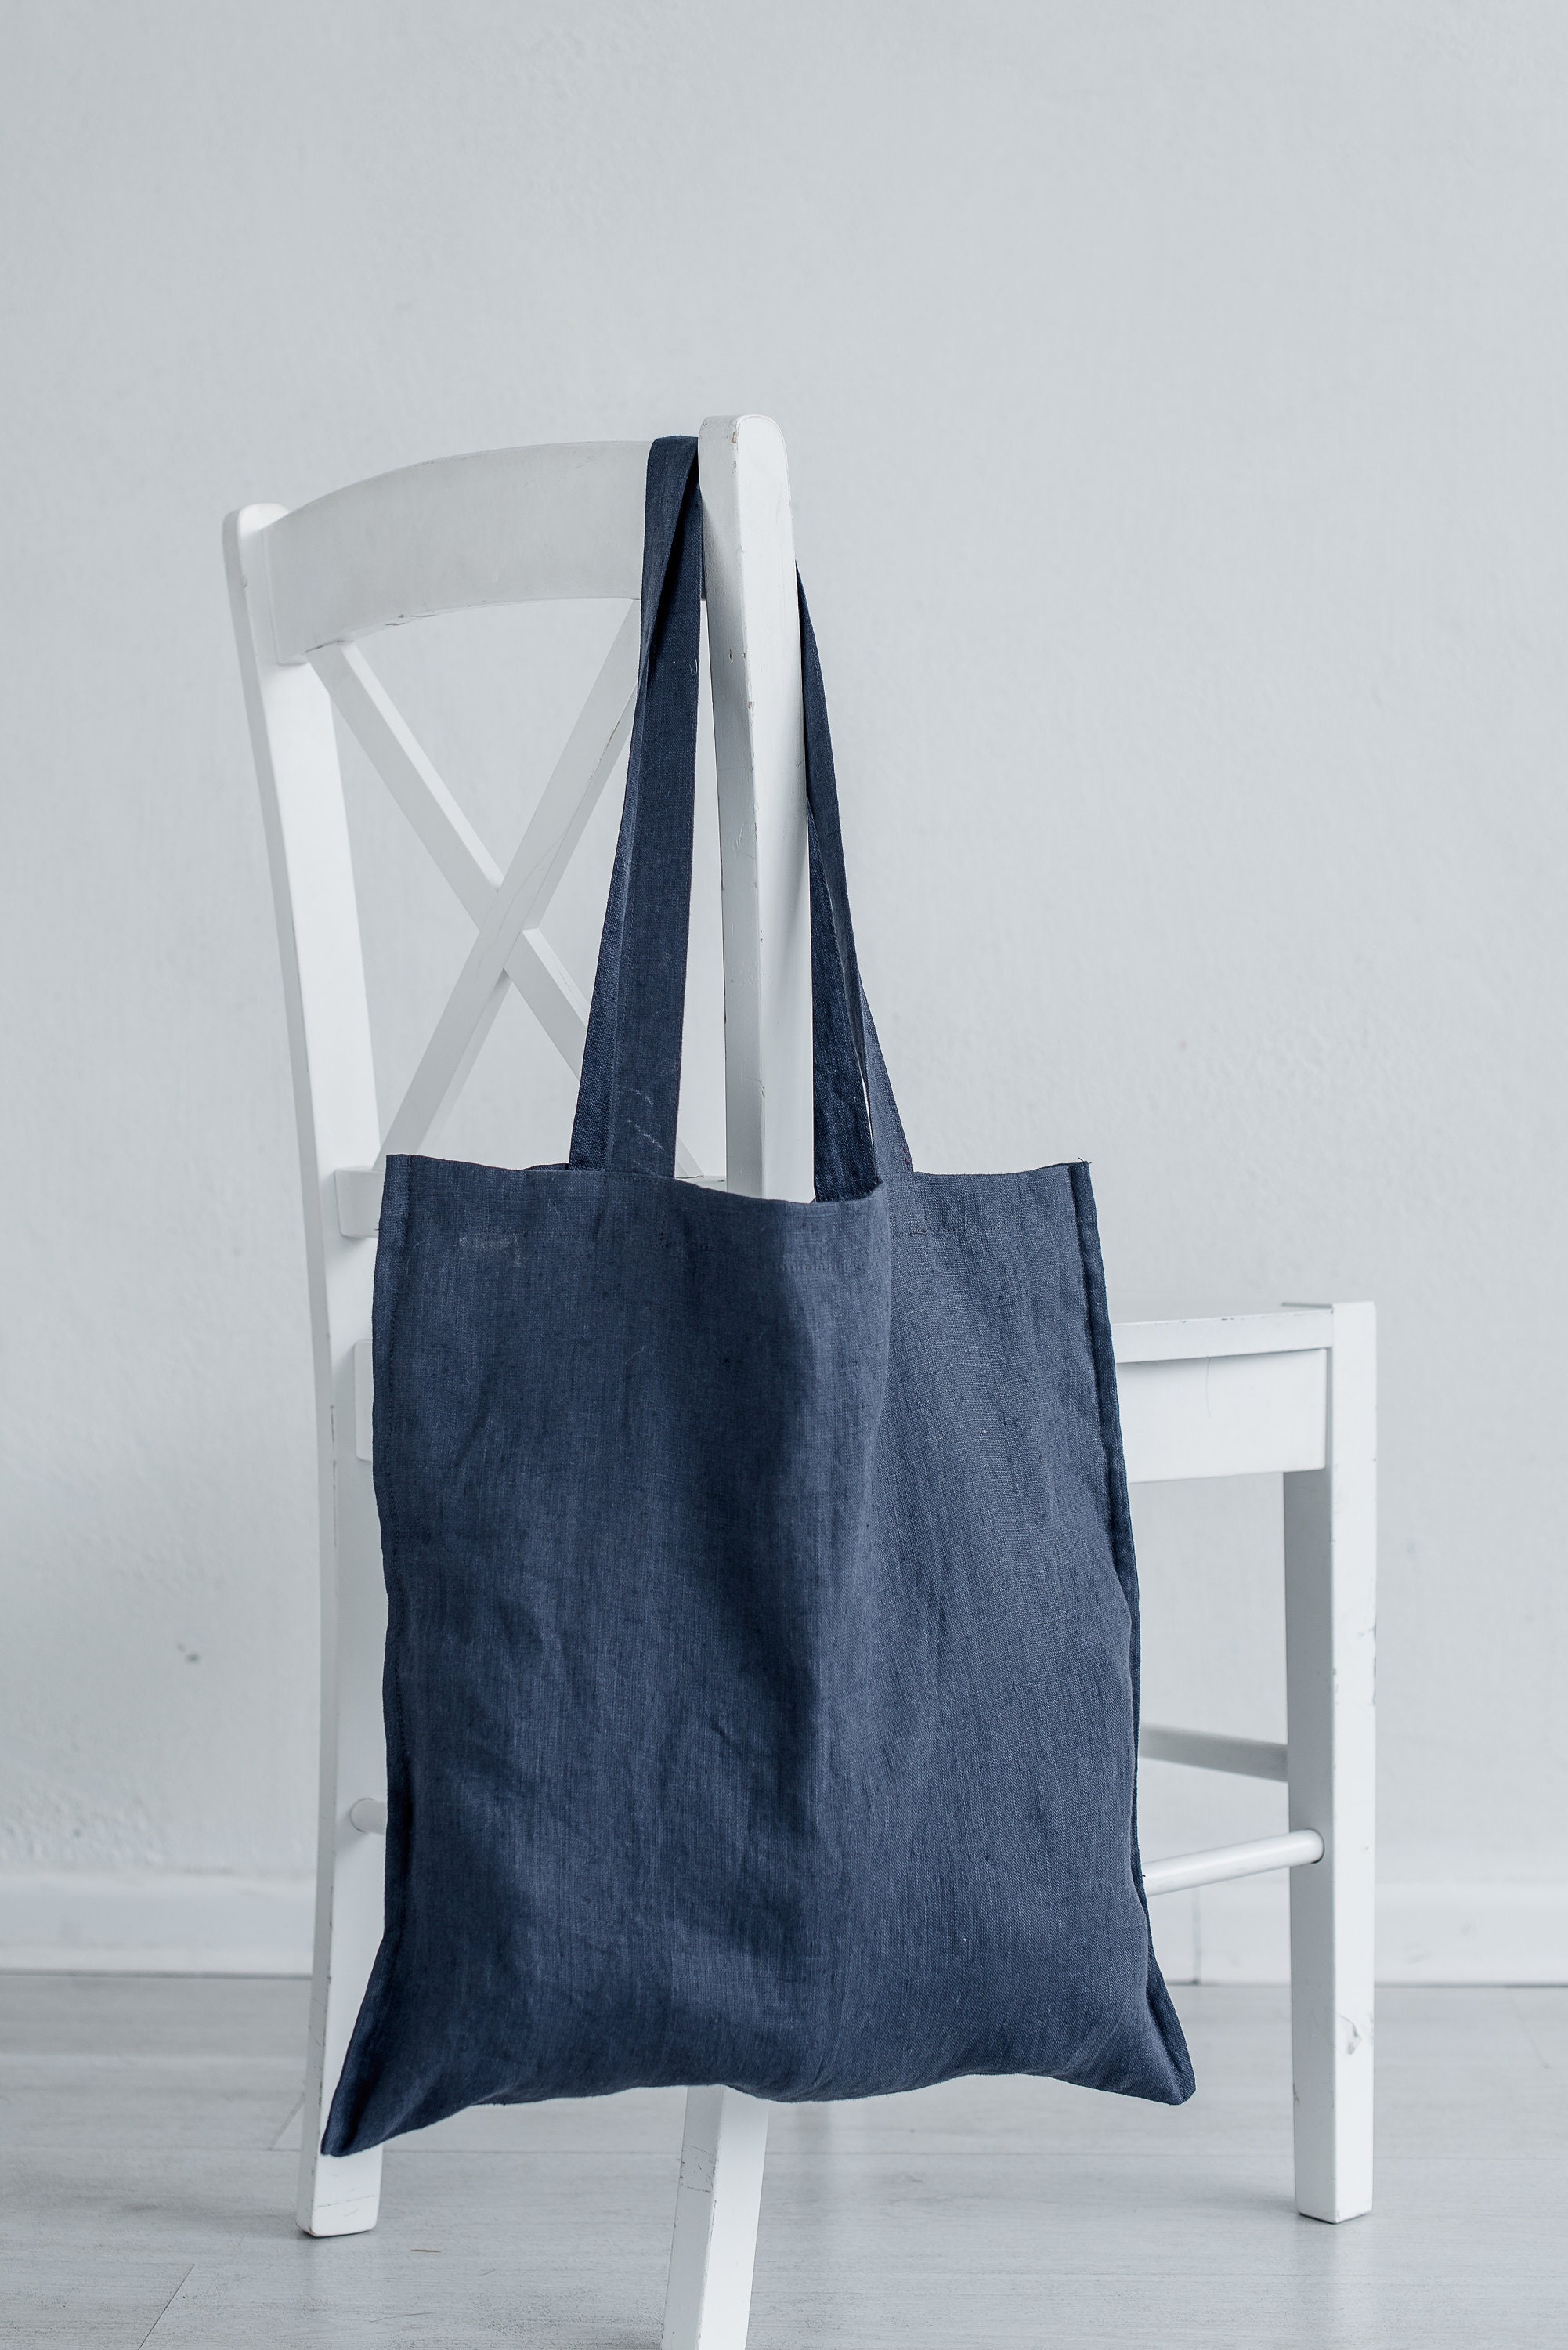 Natural Linen Tote Bag / Linen Shopping Bag / Market Bag / | Etsy